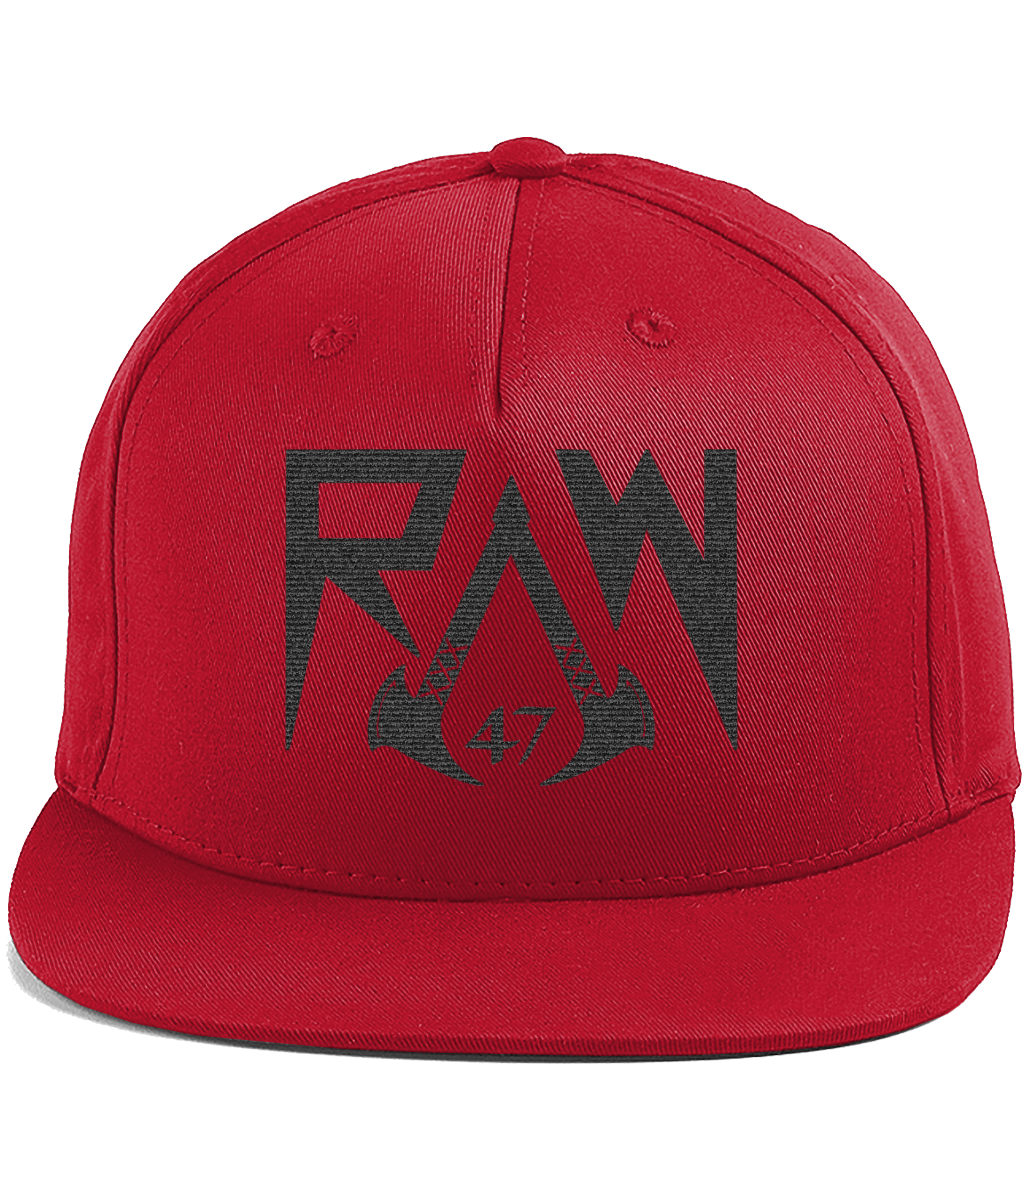 Raw47 Cotton Rapper Snapback Cap